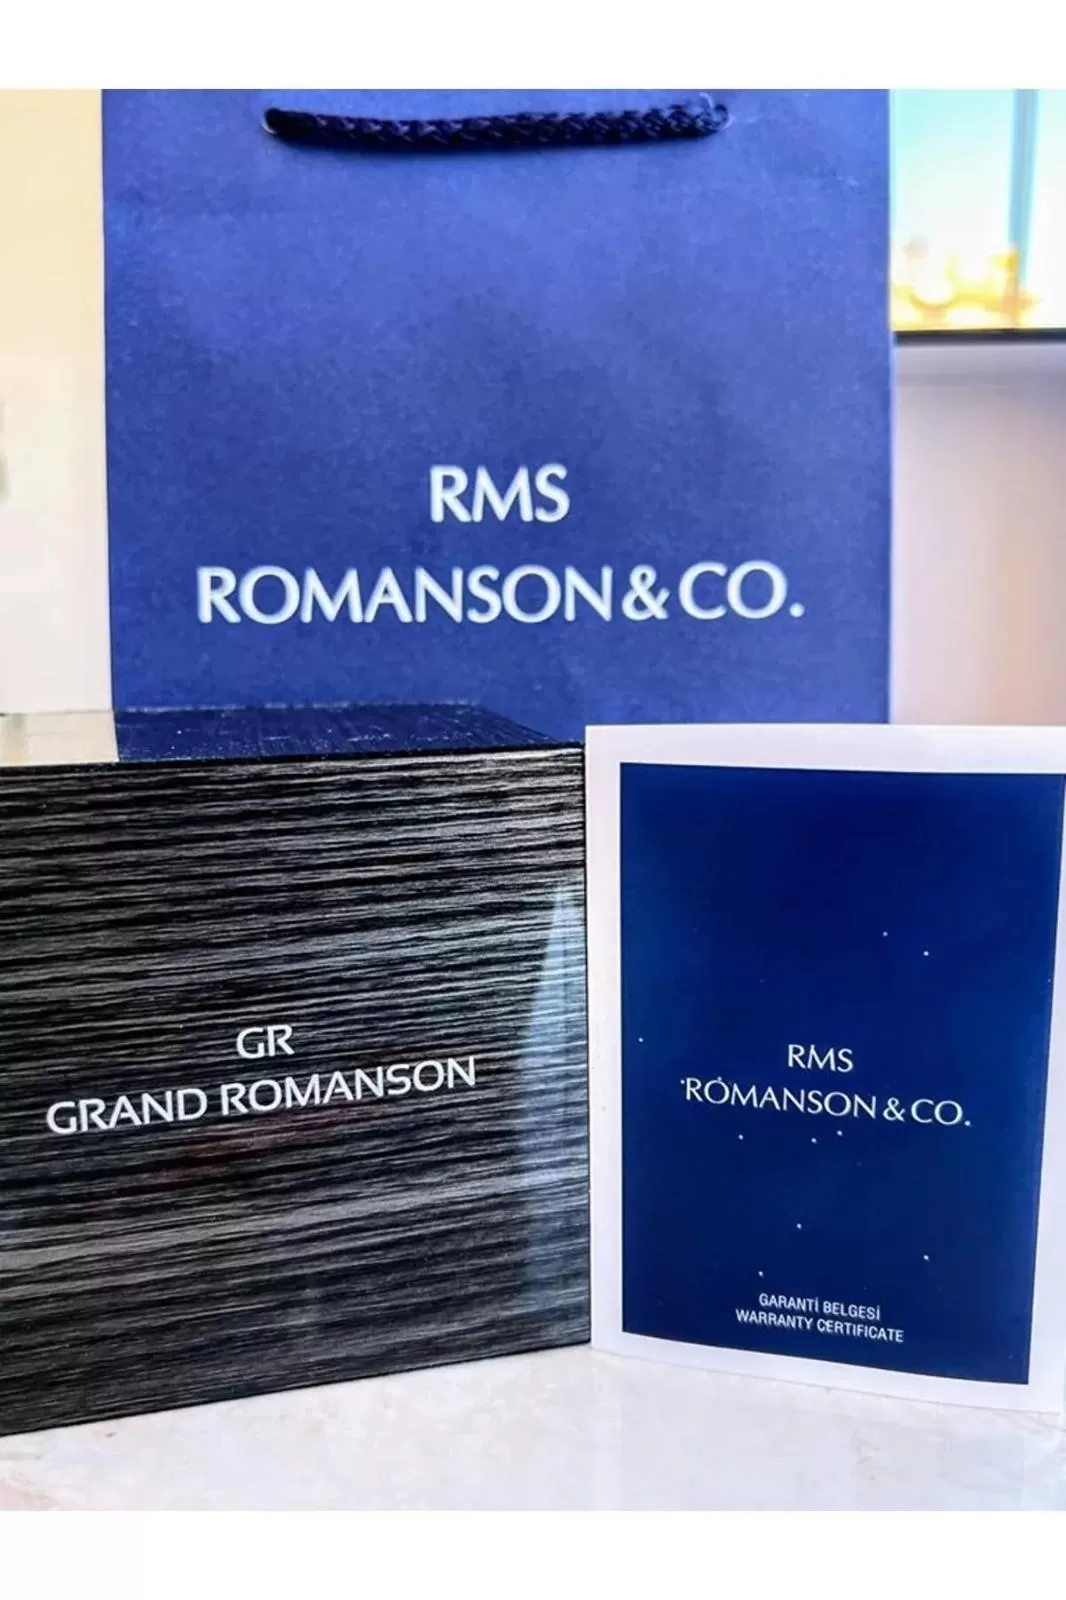 RM1522.08 Romanson Özel Seri Takım Elbiseye Özel Tasarım Damat & Nişan Saati  Kararmaz Renk Atmaz